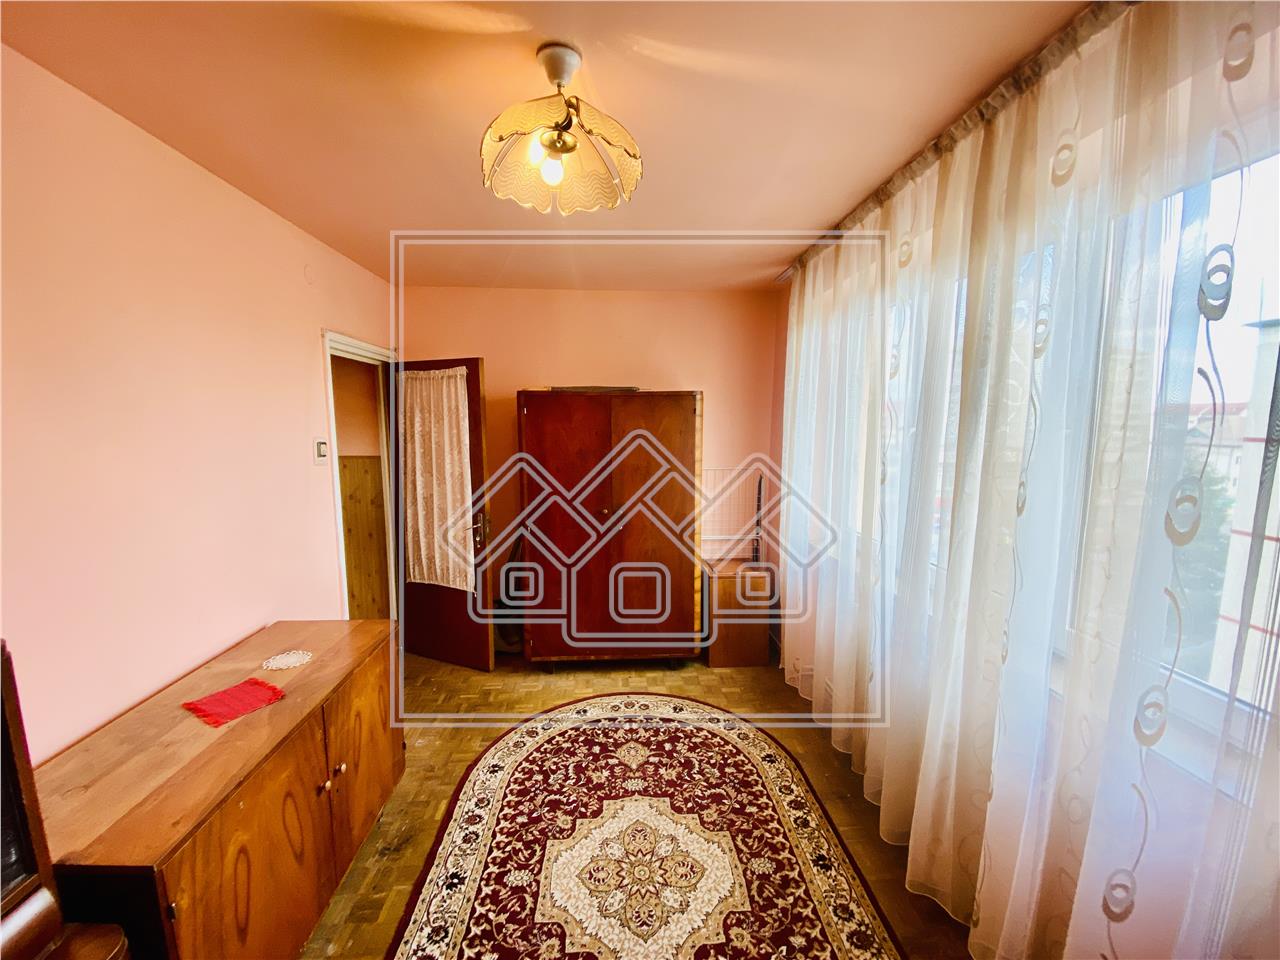 Apartament de vanzare in Sibiu - 4 camere si balcon - Zona Luptei